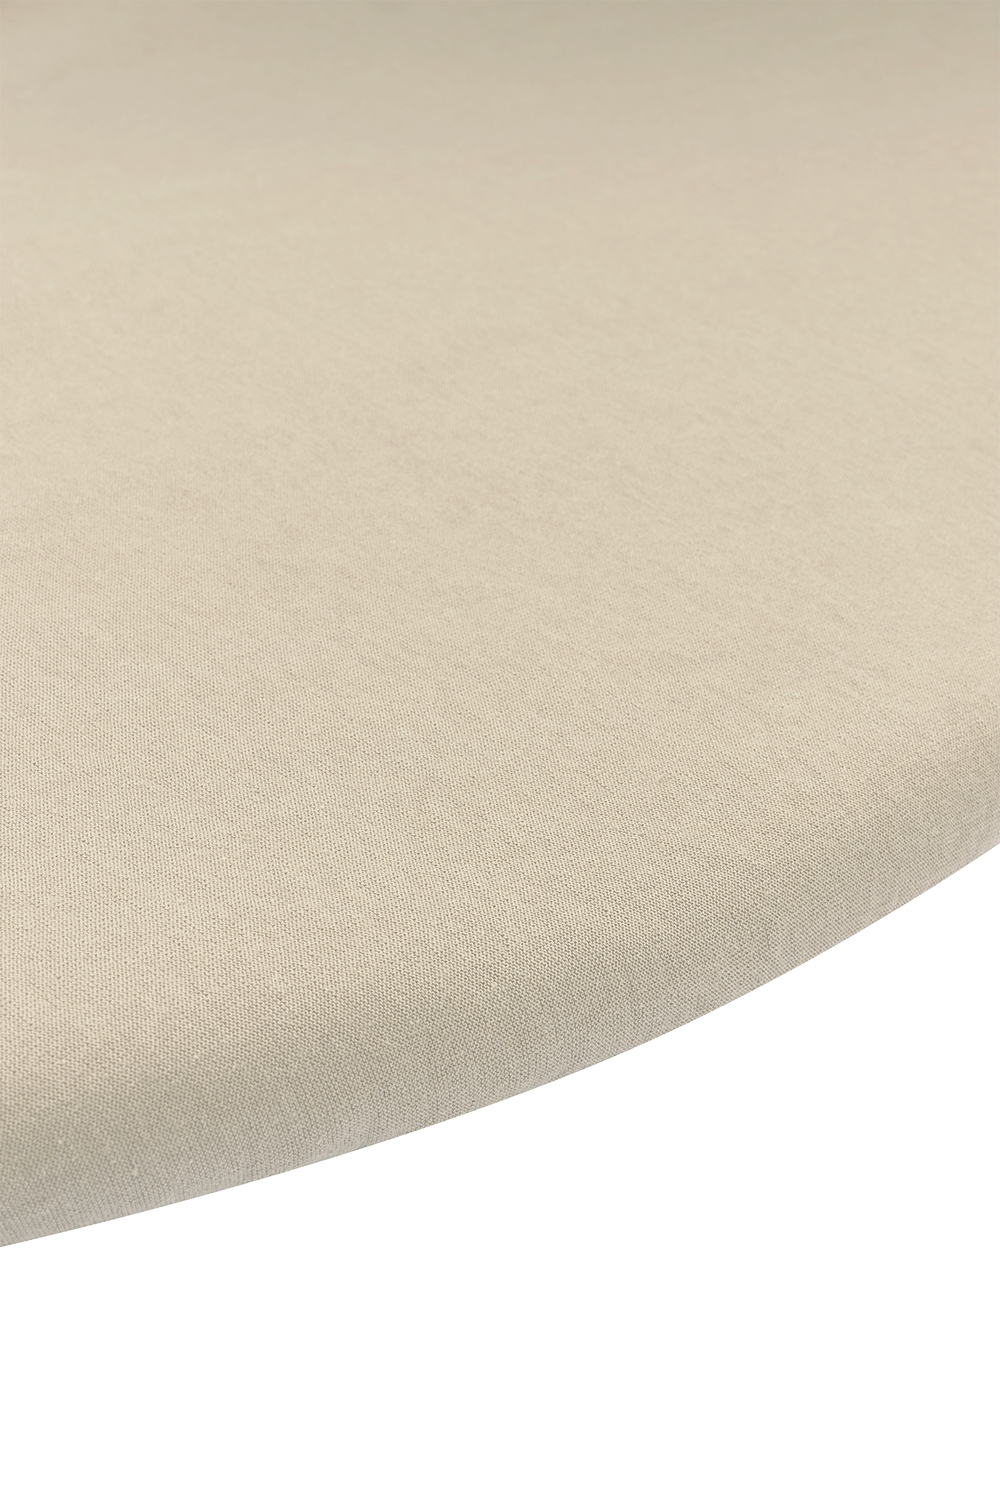 Fitted sheet playpen mattress Uni - sand - Round 90/95cm